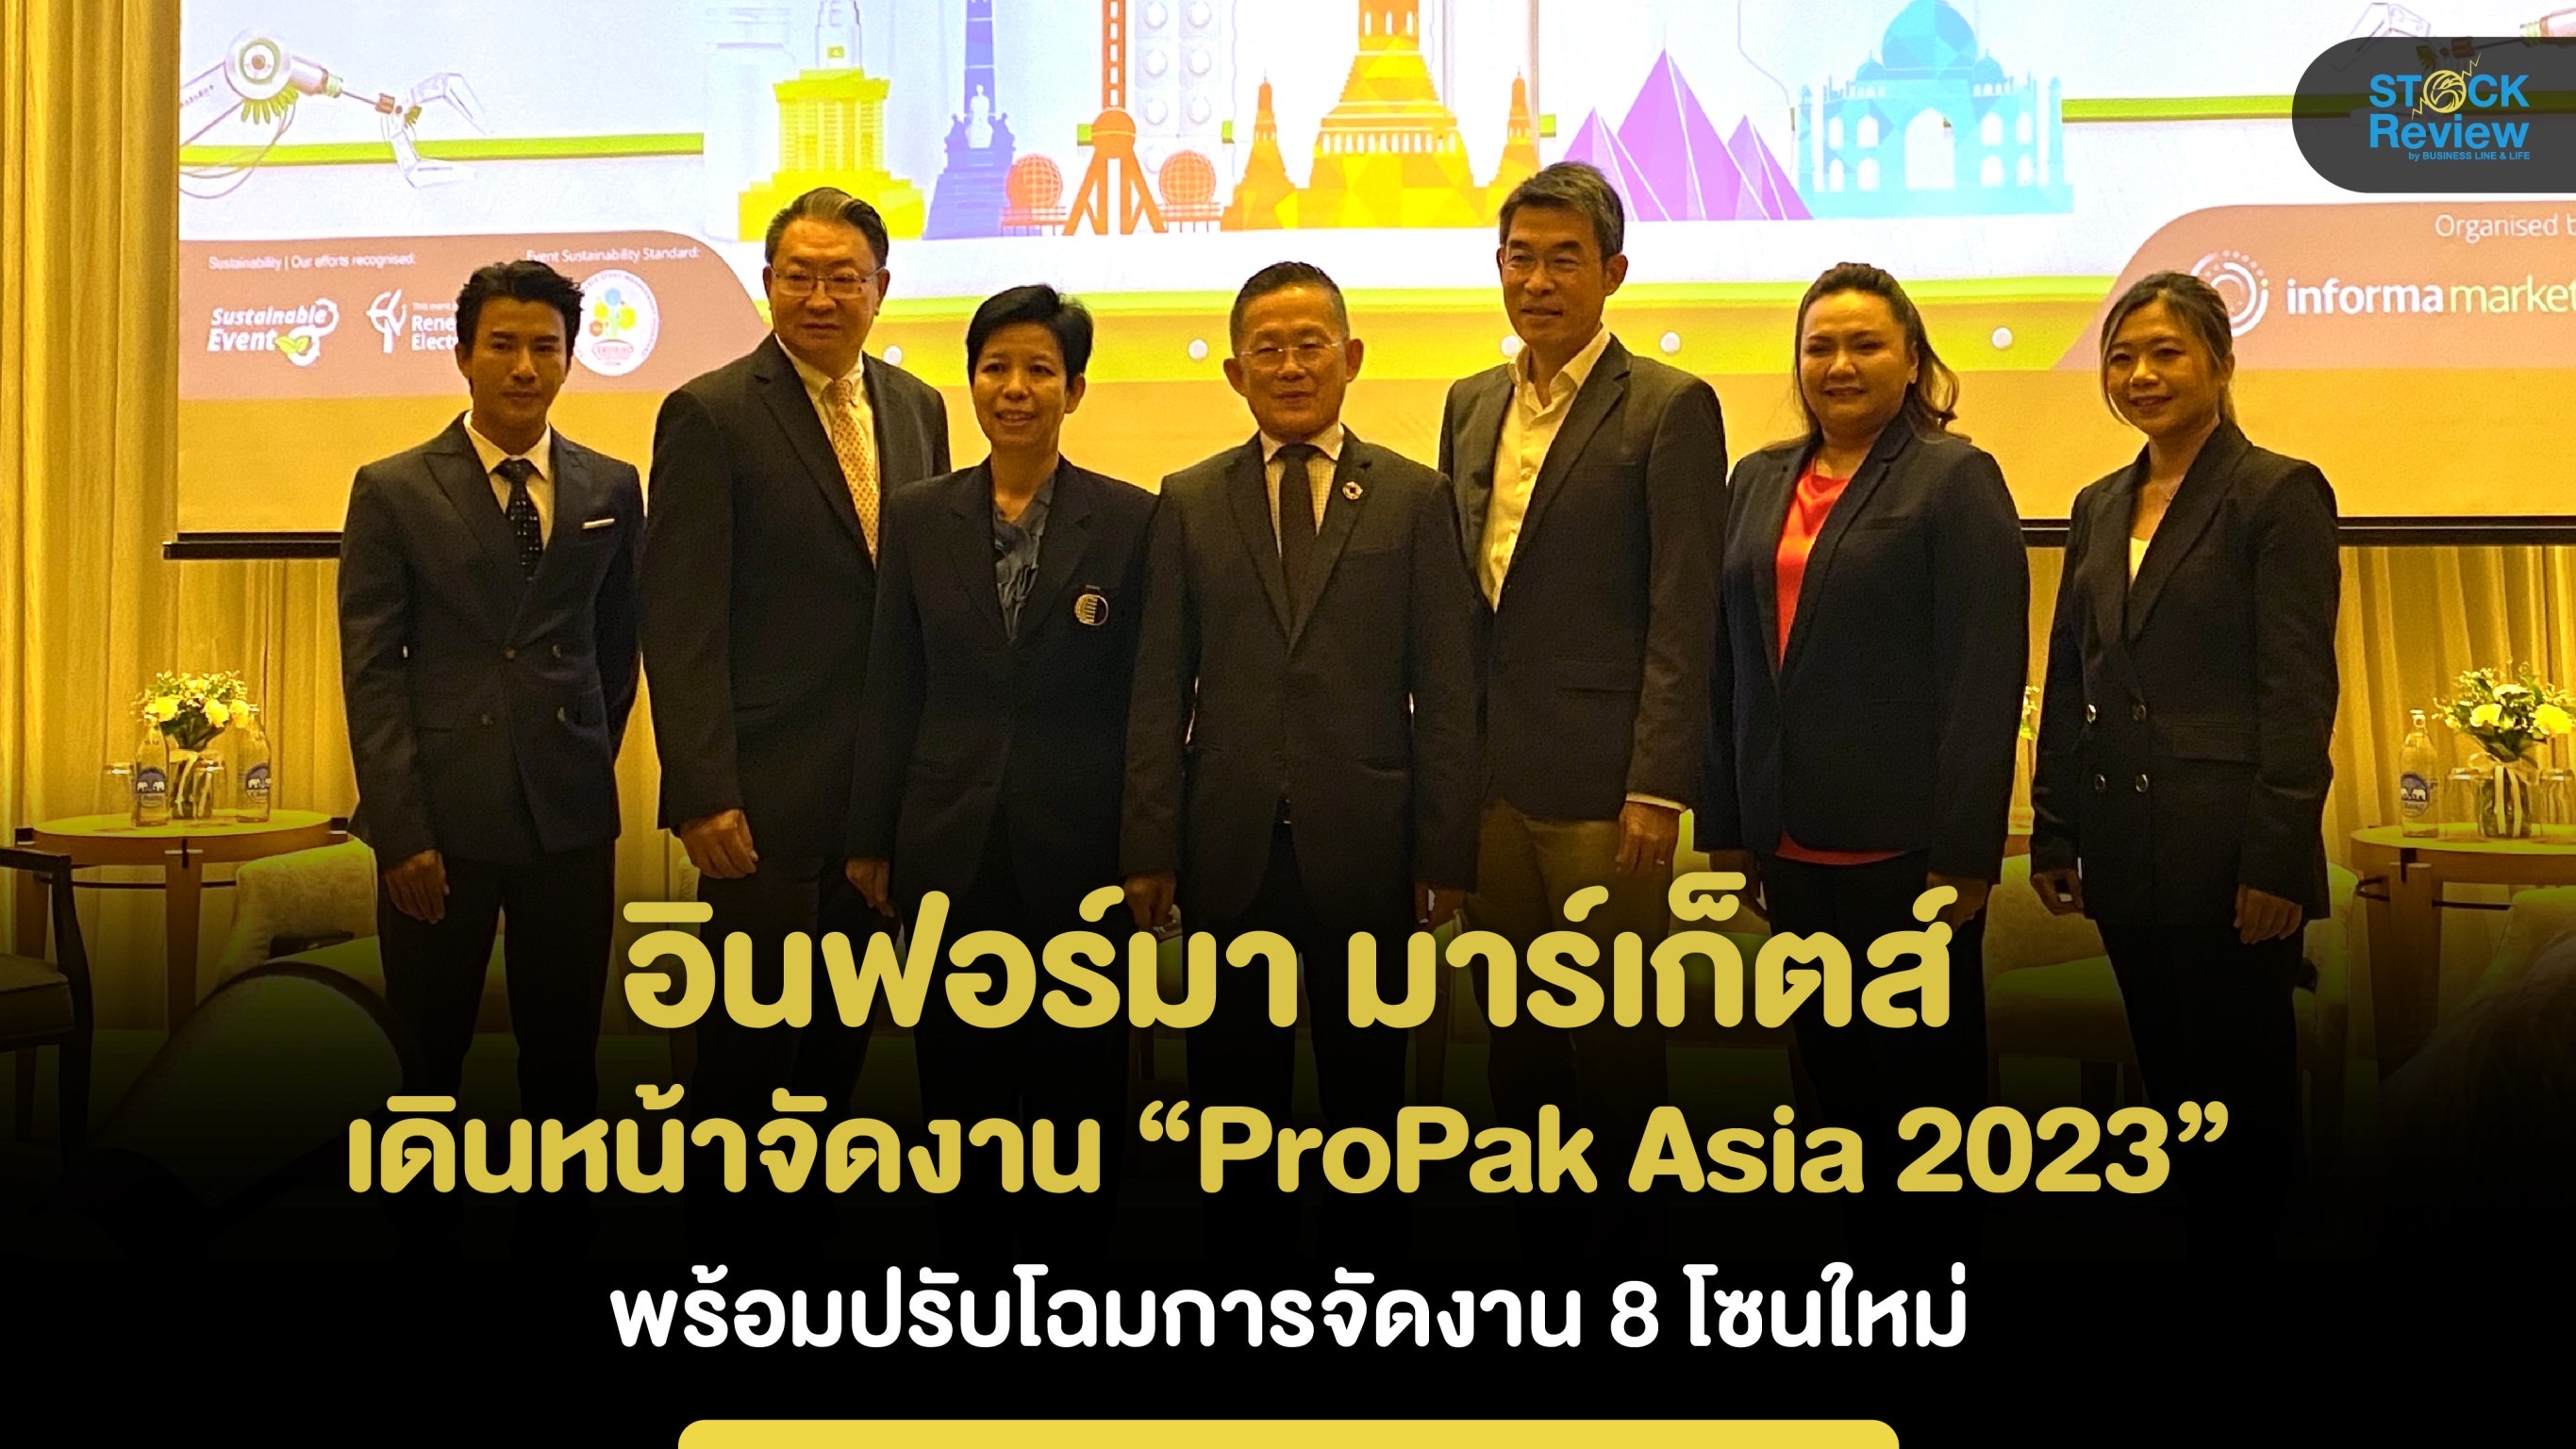 อินฟอร์มา มาร์เก็ตส์ เดินหน้าจัดงาน “ProPak Asia 2023” 14-17 มิ.ย.นี้ ณ ไบเทค บางนา